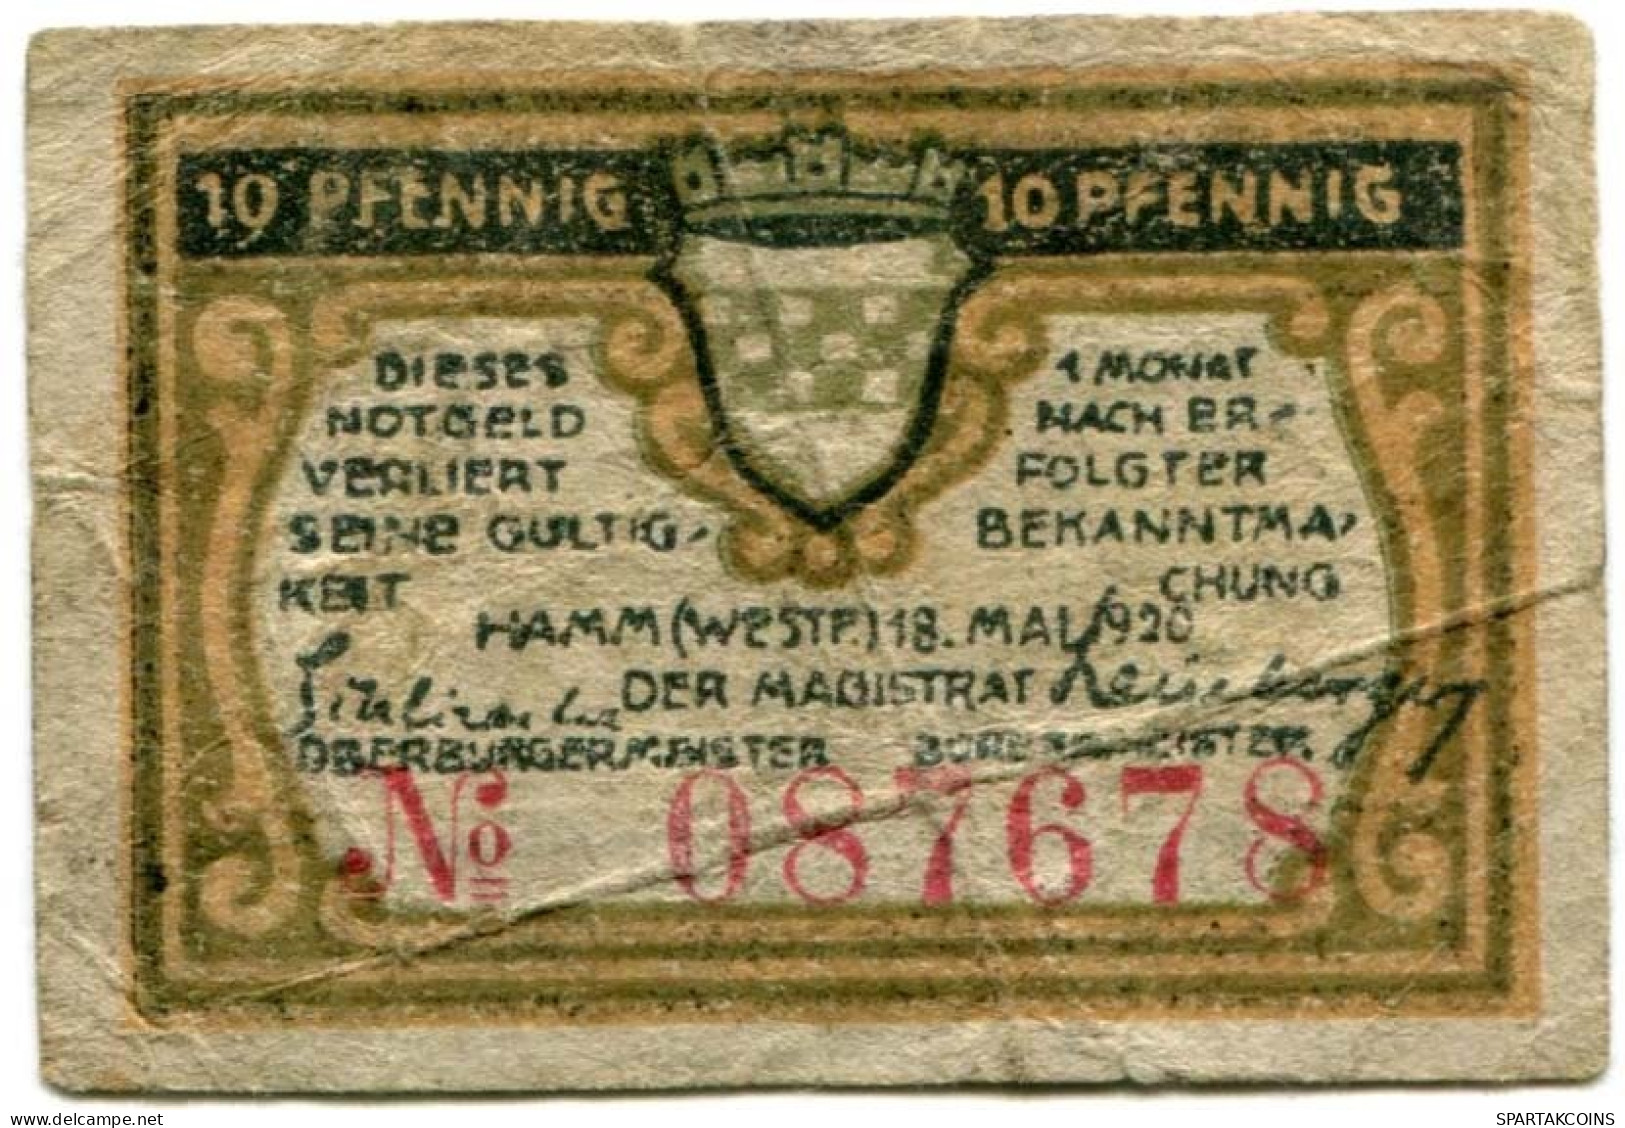 10 PFENNIG 1920 Stadt HAMM Westphalia DEUTSCHLAND Notgeld Papiergeld Banknote #PL600 - [11] Emissions Locales